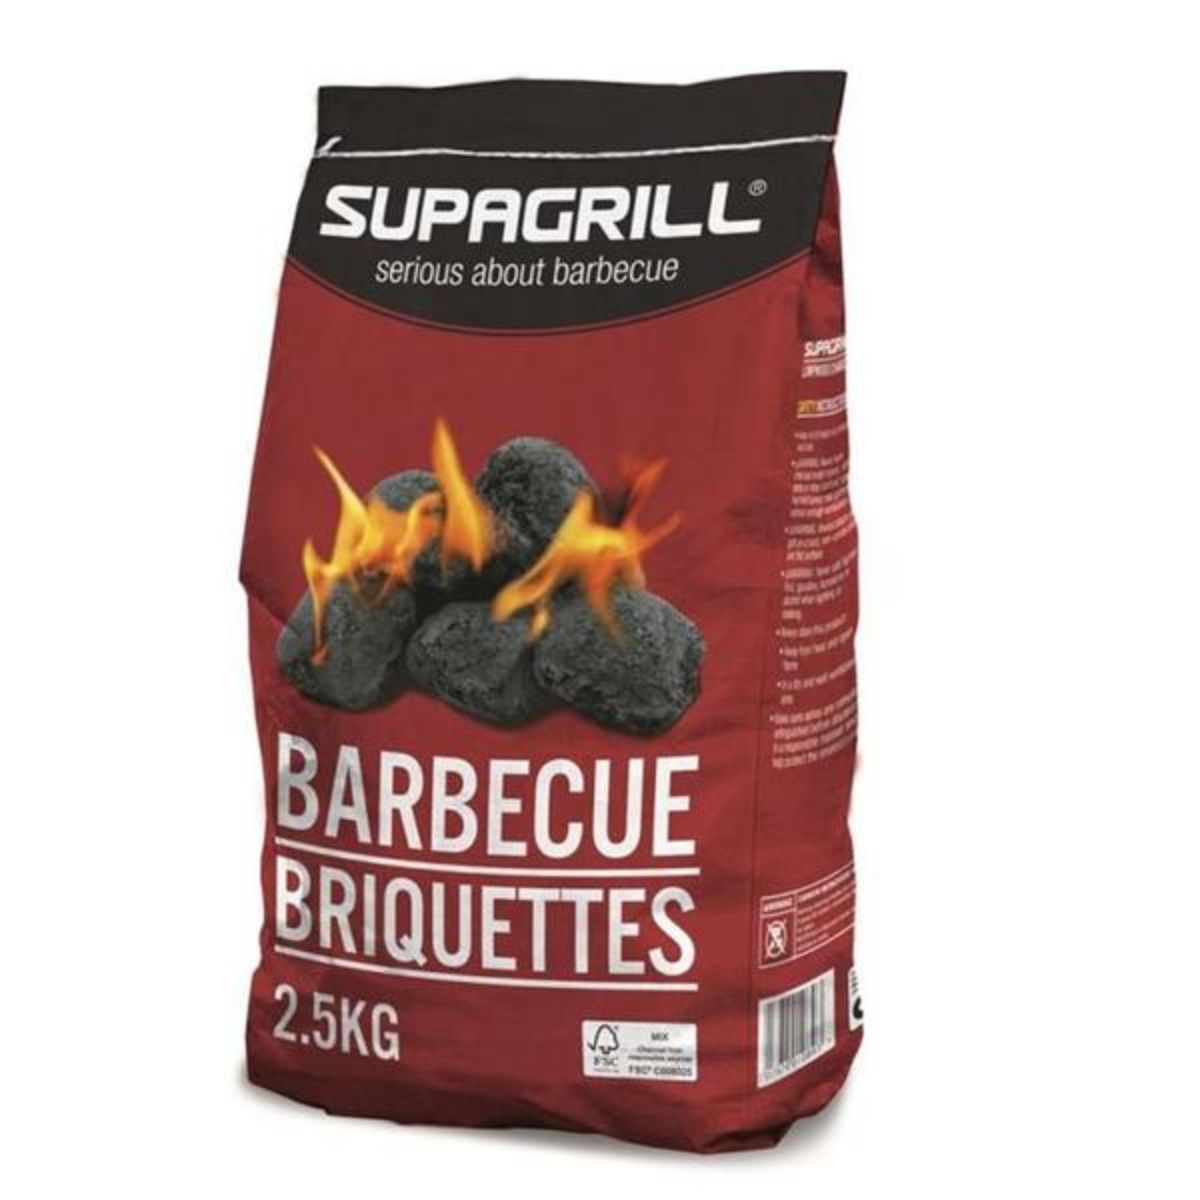 Supagrill - Charcoal BBQ Briquettes - 2.5kg barbecue briquettes.